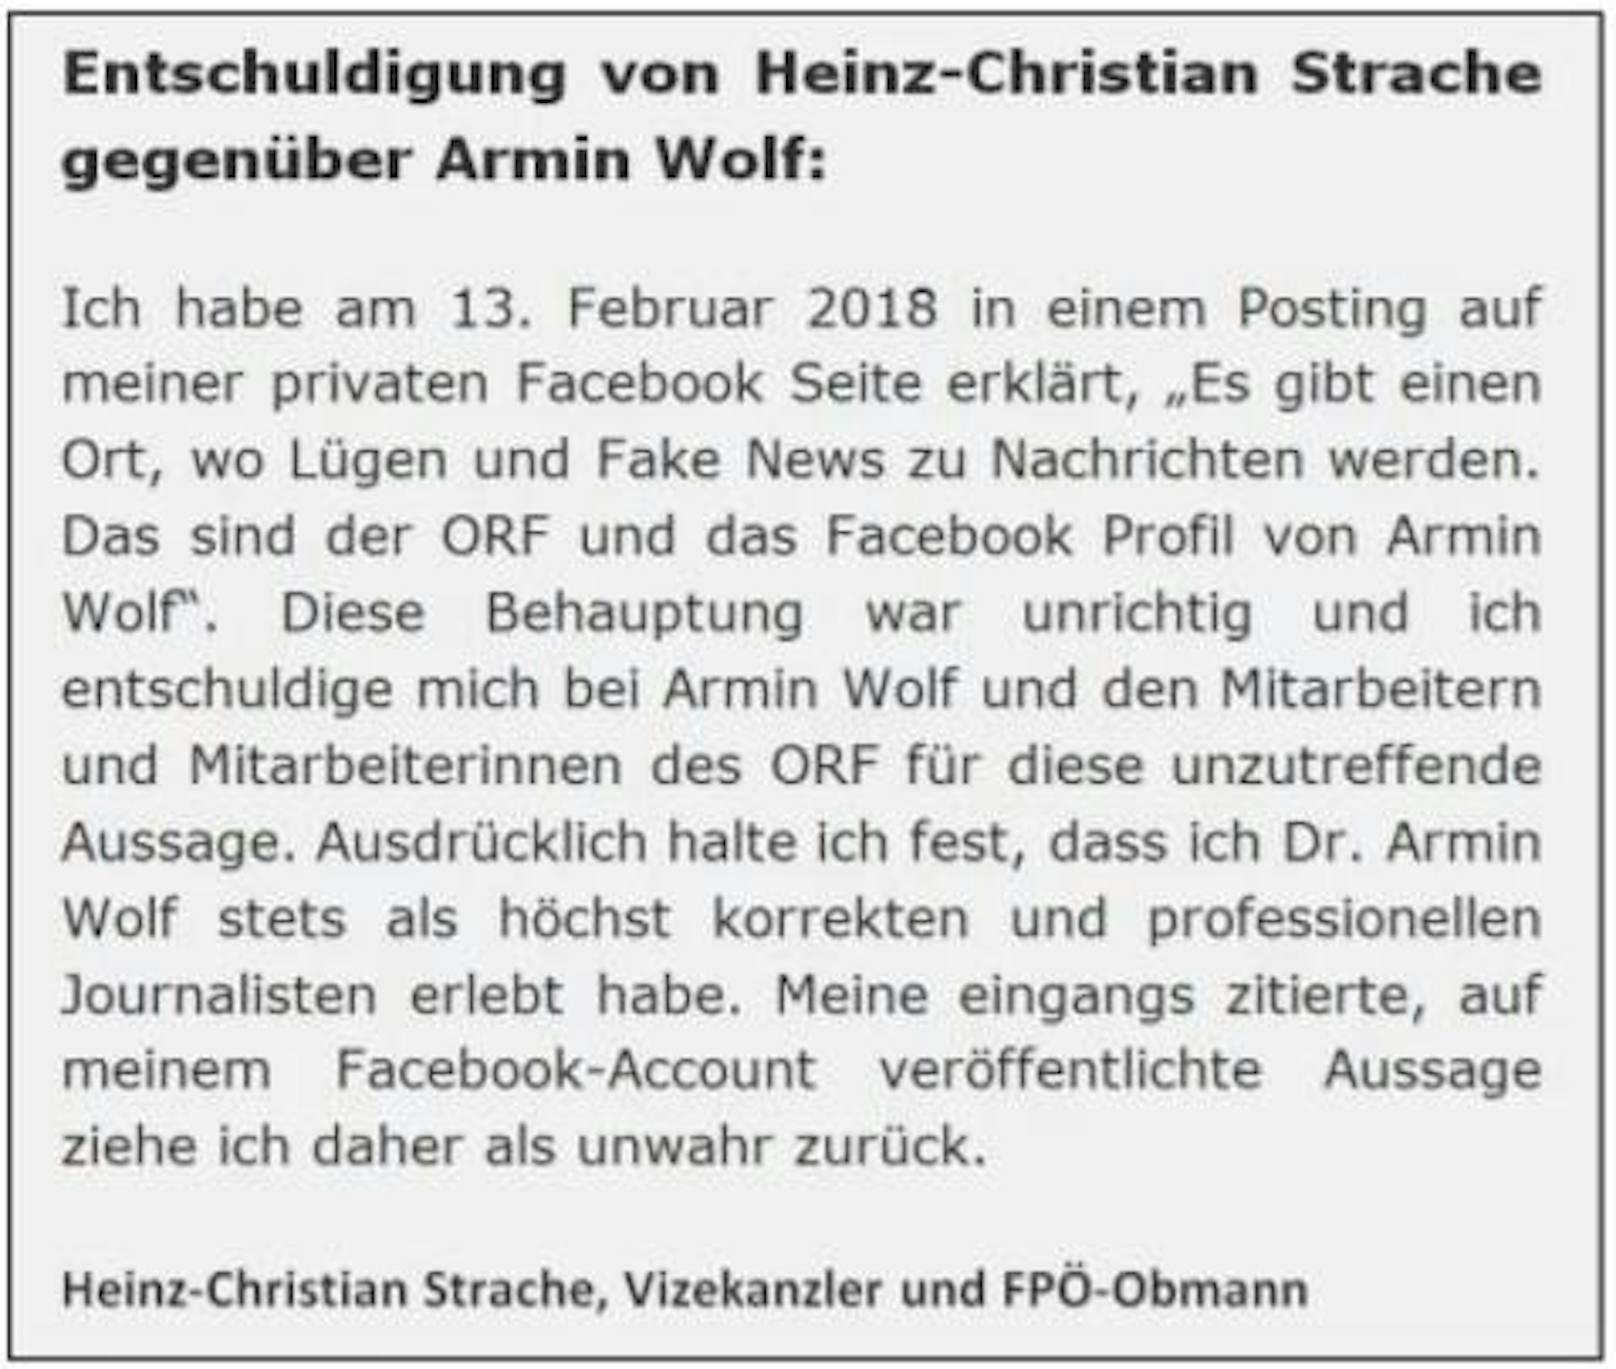 Am 13. März dann der außergerichtliche Vergleich: H.C. Strache muss diese Entschuldigung auf seinem privaten Facebook-Account fixieren und ein Inserat in der "Kronen Zeitung" schalten. Außerdem muss er eine Entschädigung von 10.000 Euro zahlen.